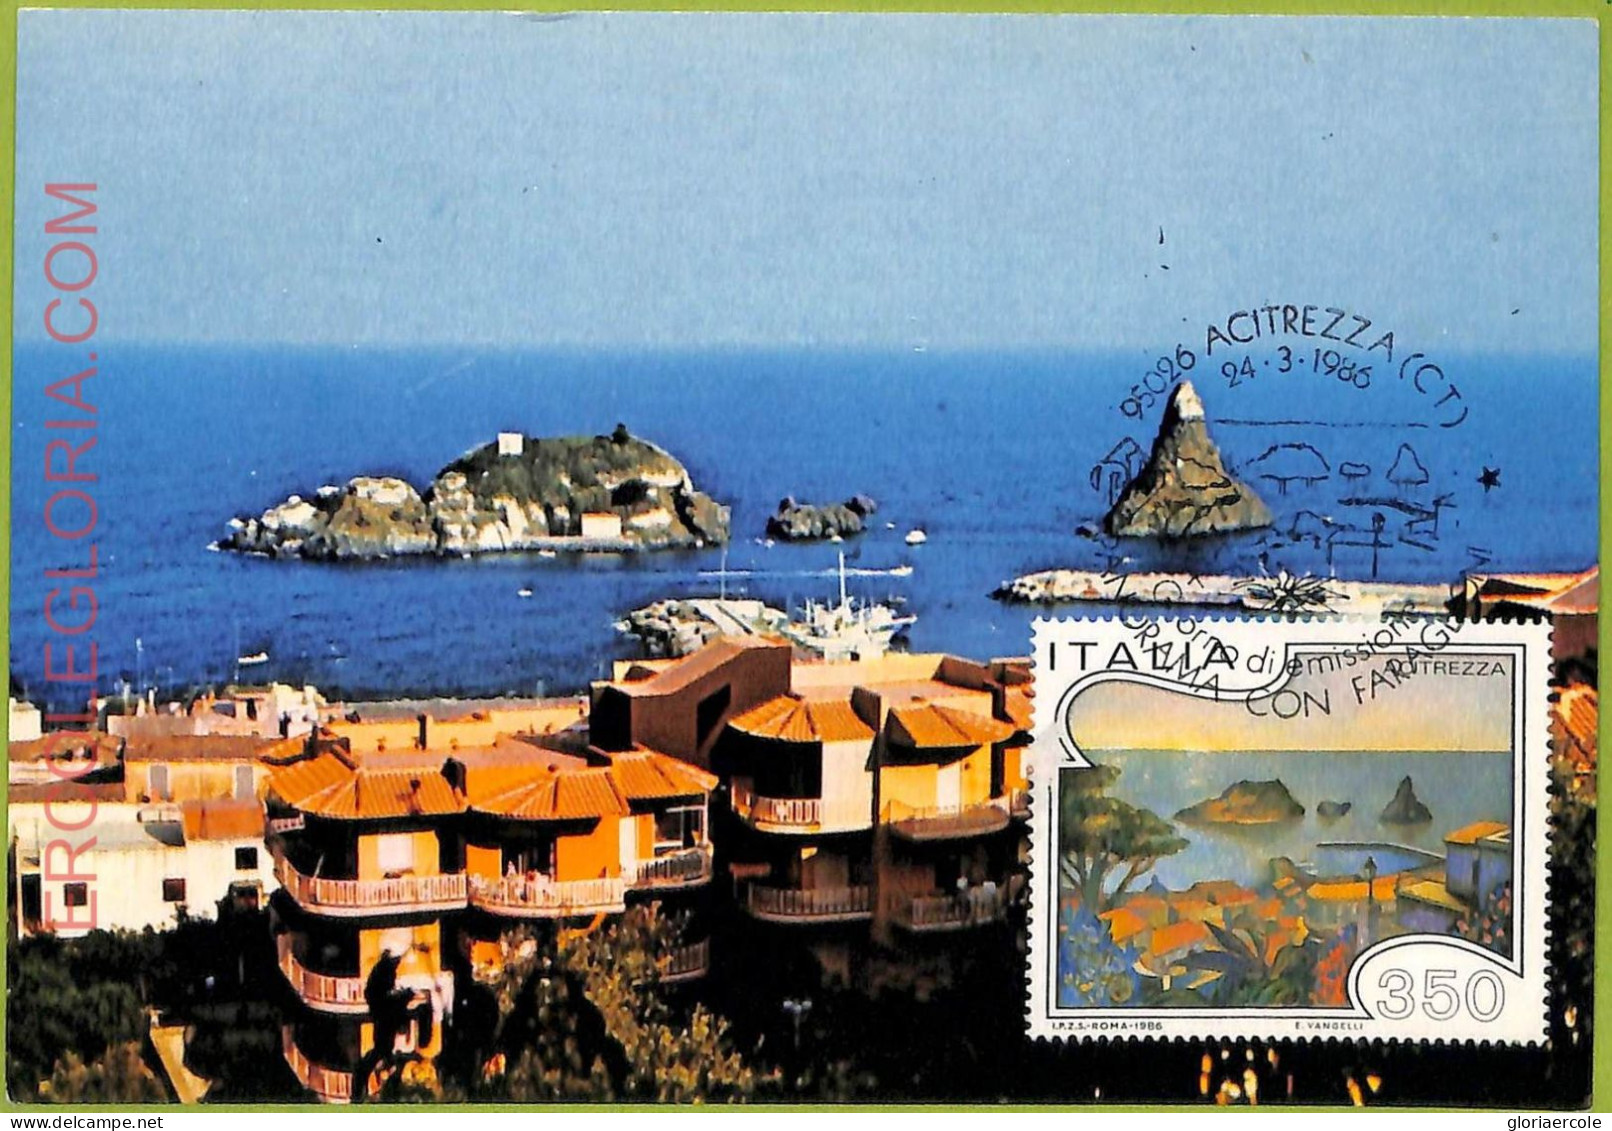 Ad3370 - ITALY - Postal History - MAXIMUM CARD - 1986 - Nature - Maximum Cards